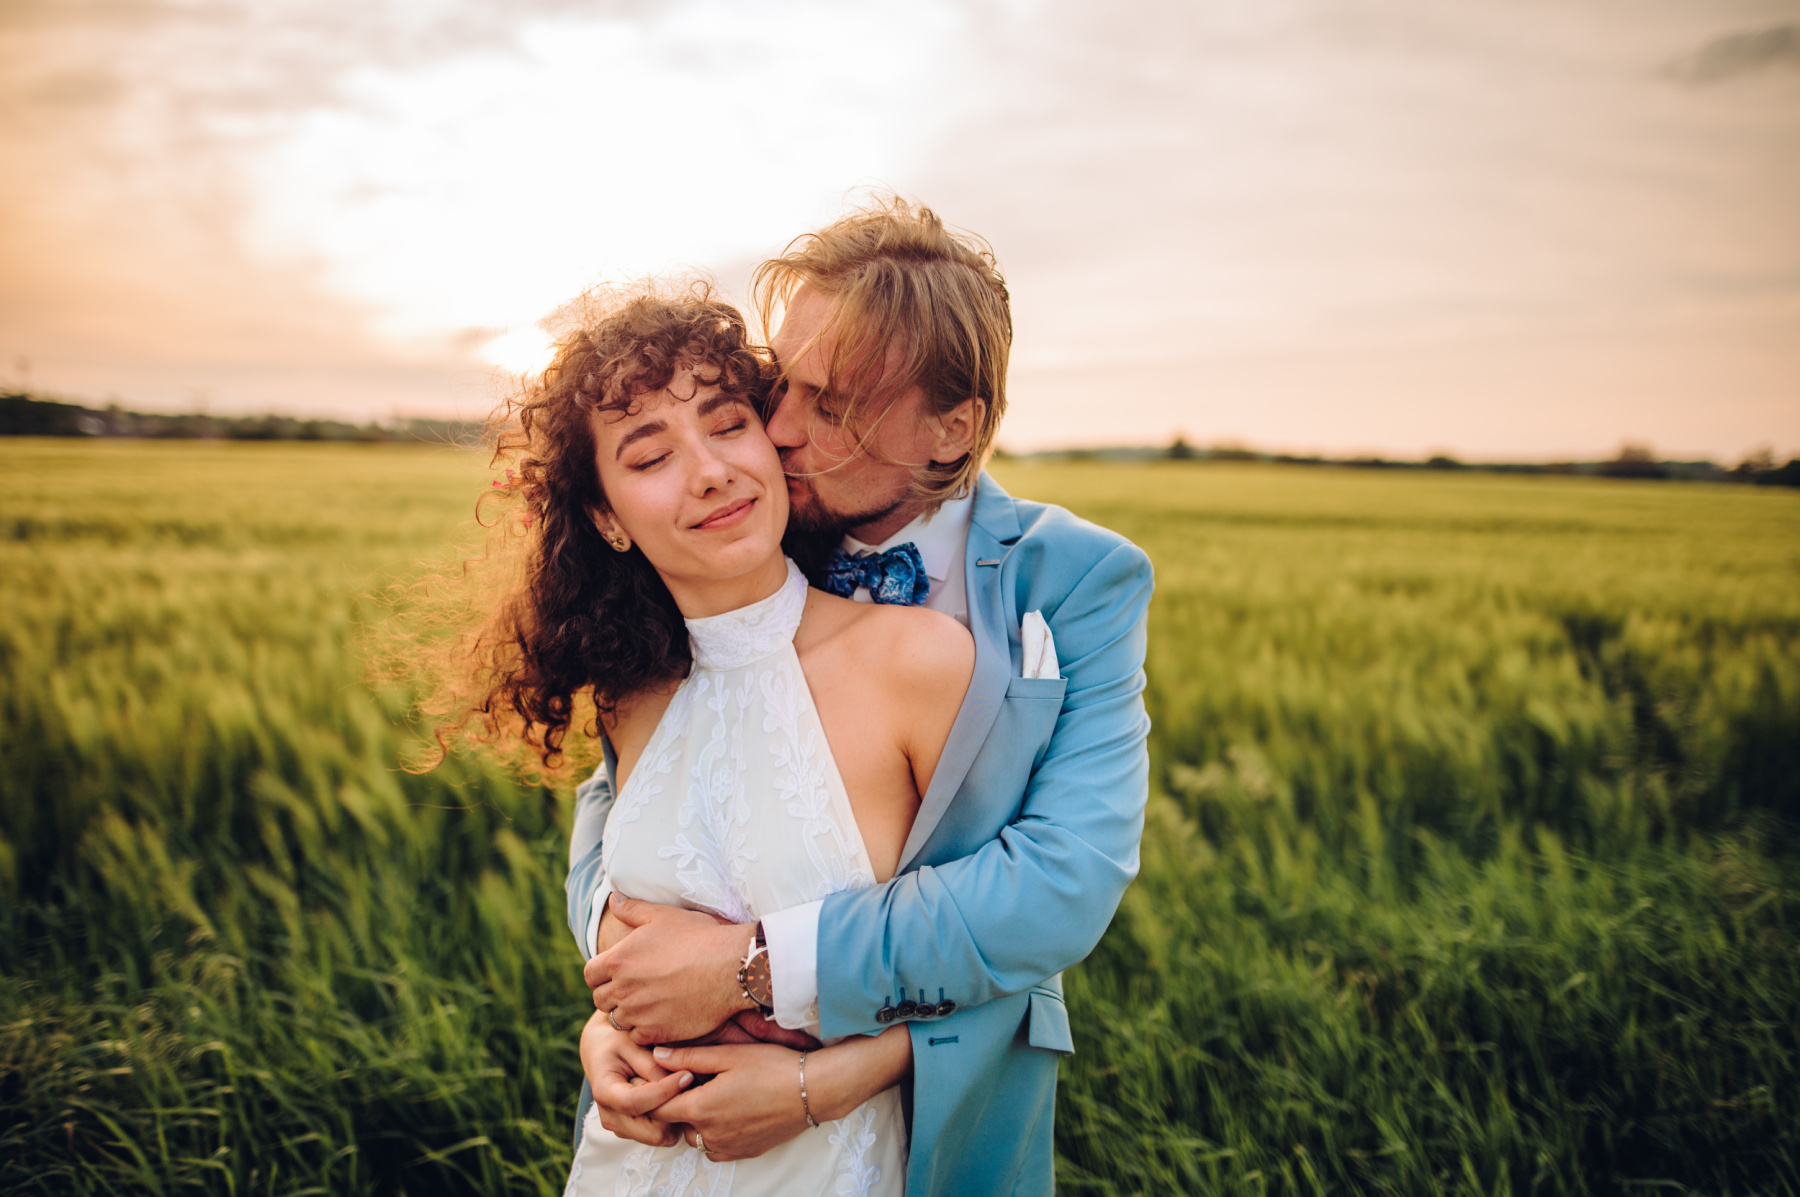 Svatební párové focení na jižní Moravě při západu slunce od Jiří Juráček fotograf